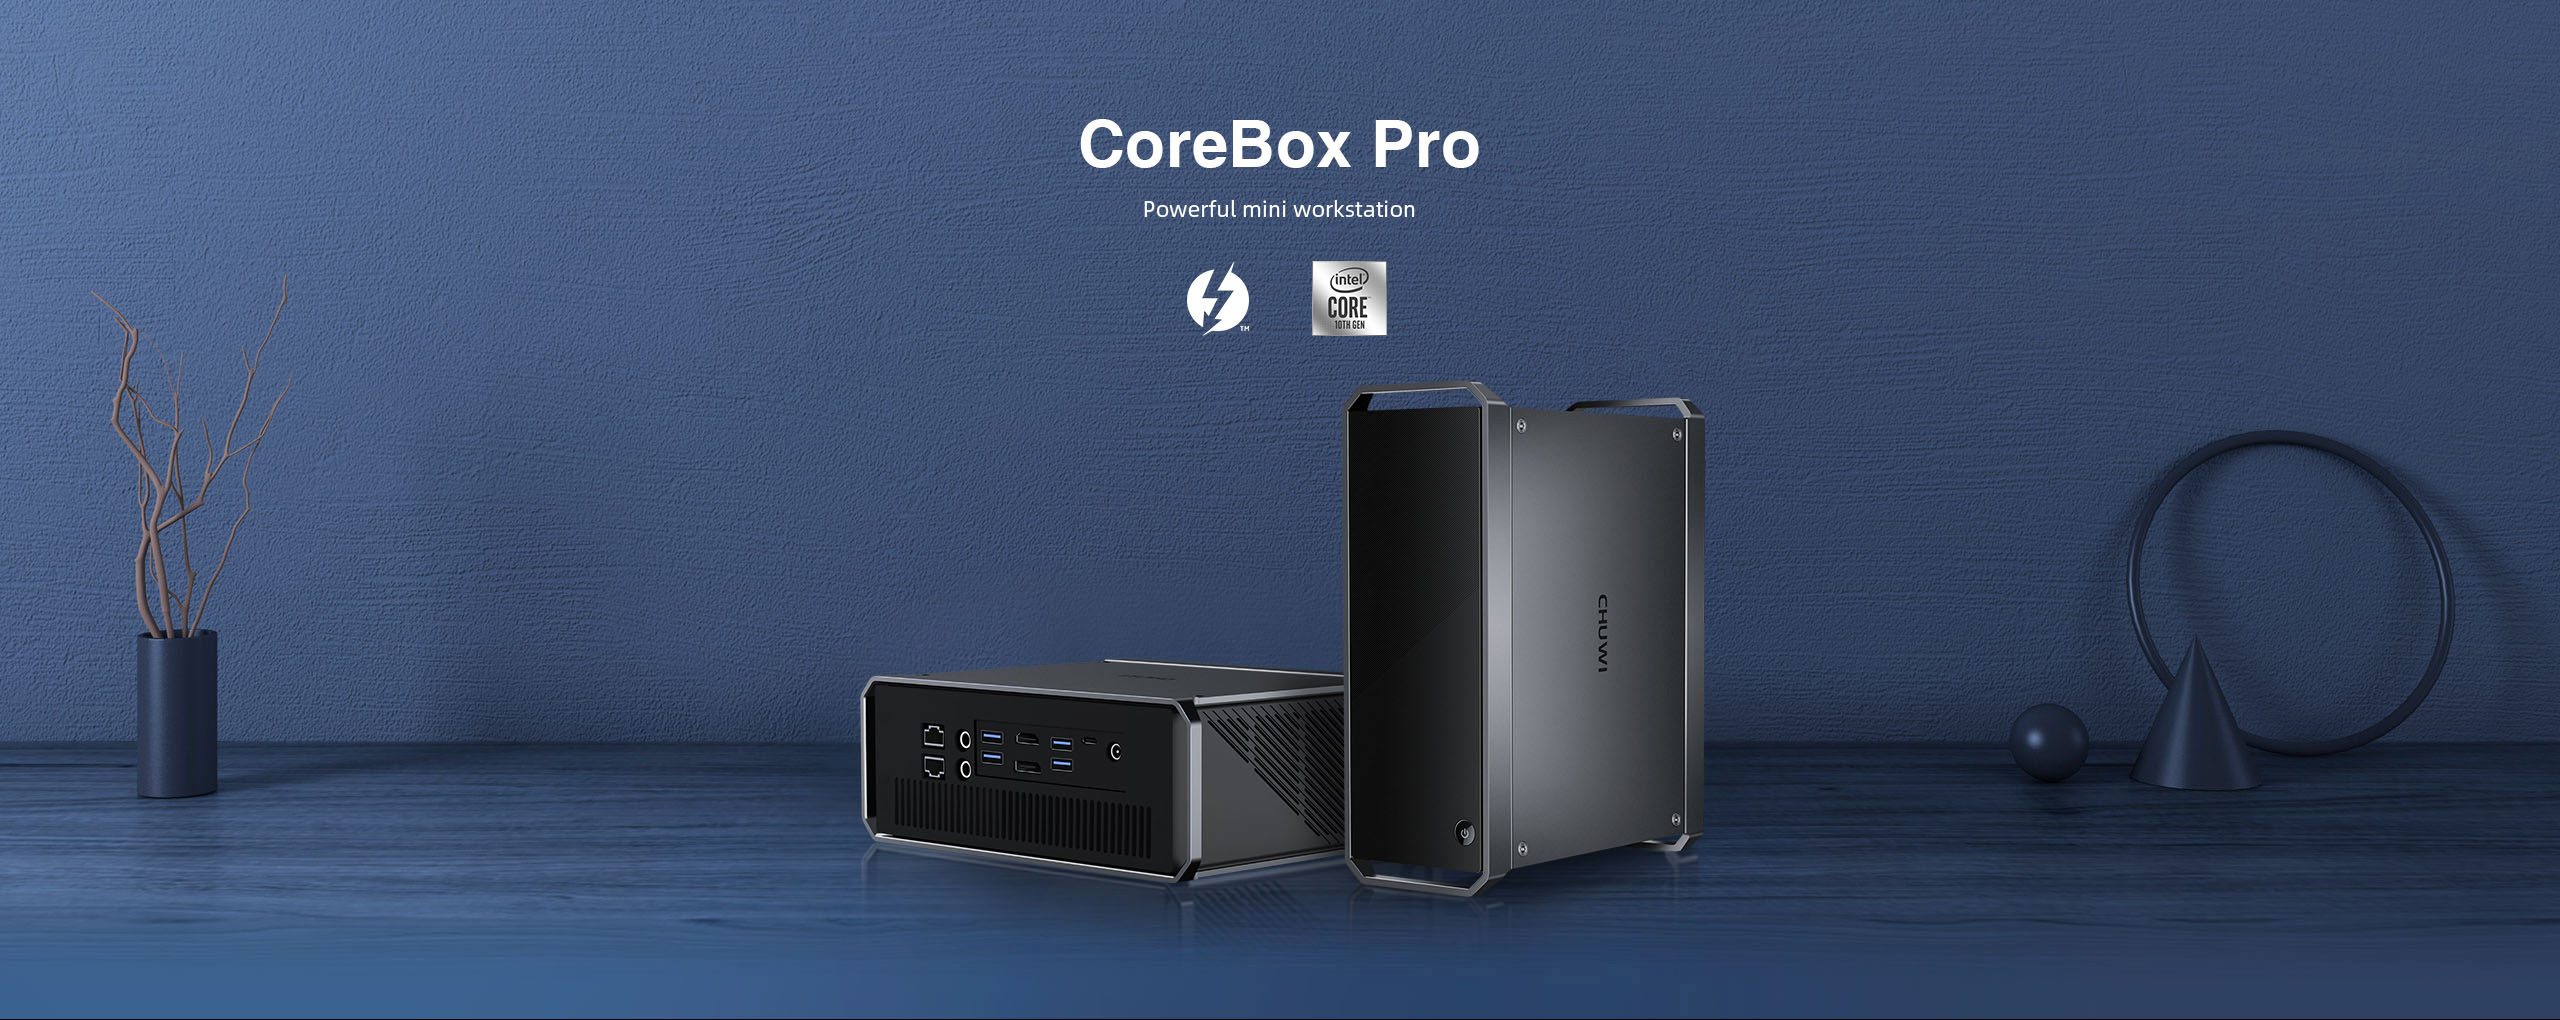 CHUWI CoreBox Pro Mini PC